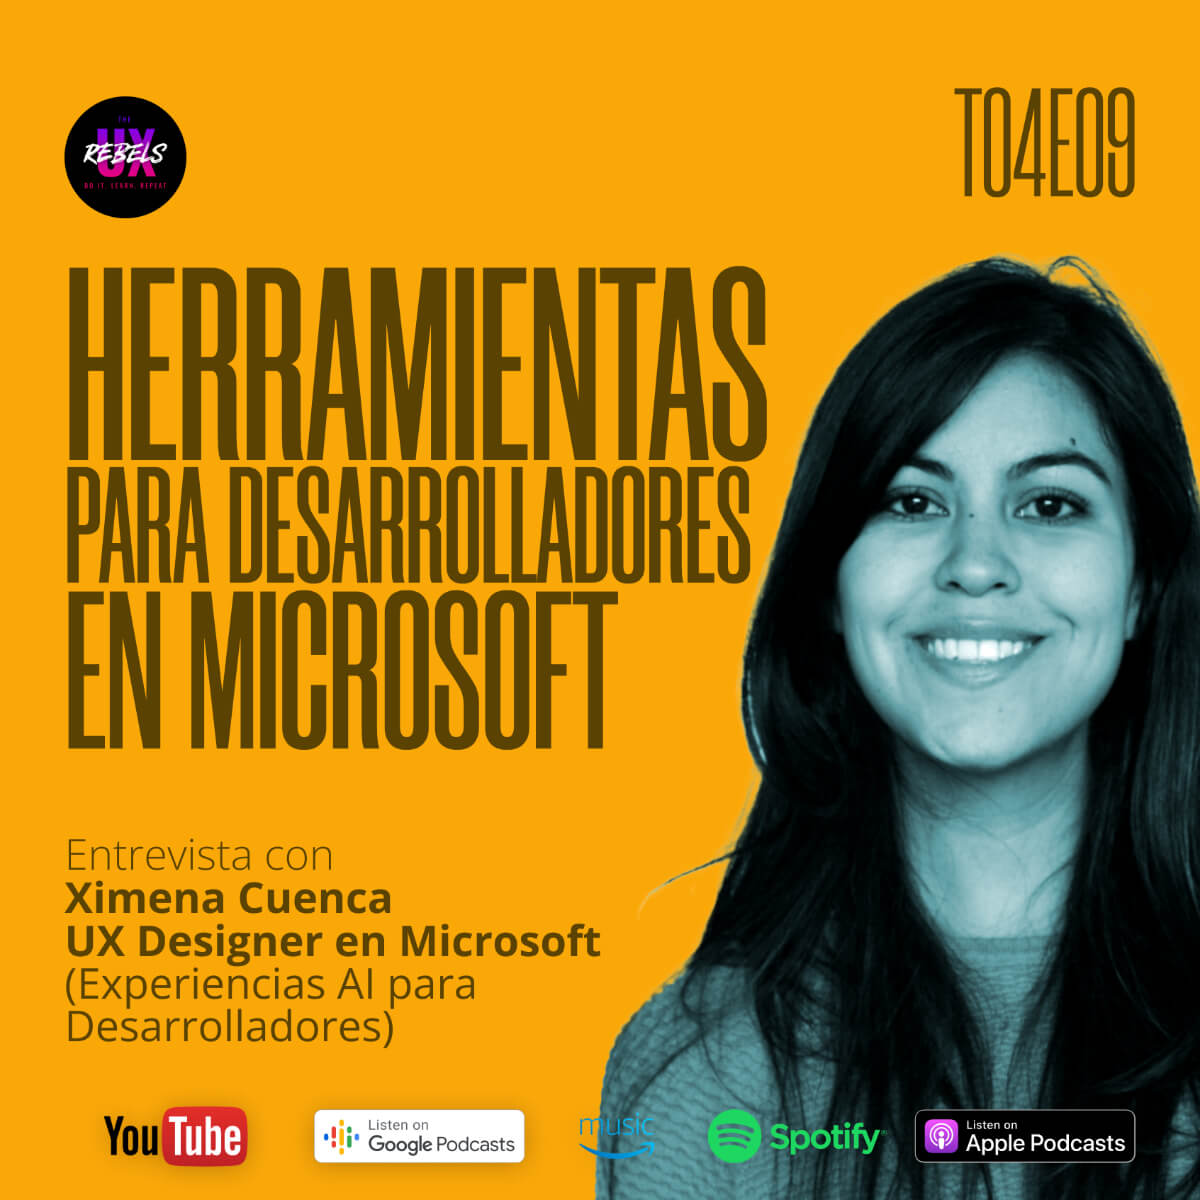 Escucha episodio con Ximena Cuenca sobre diseñar para Microsoft e inteligencia artificial